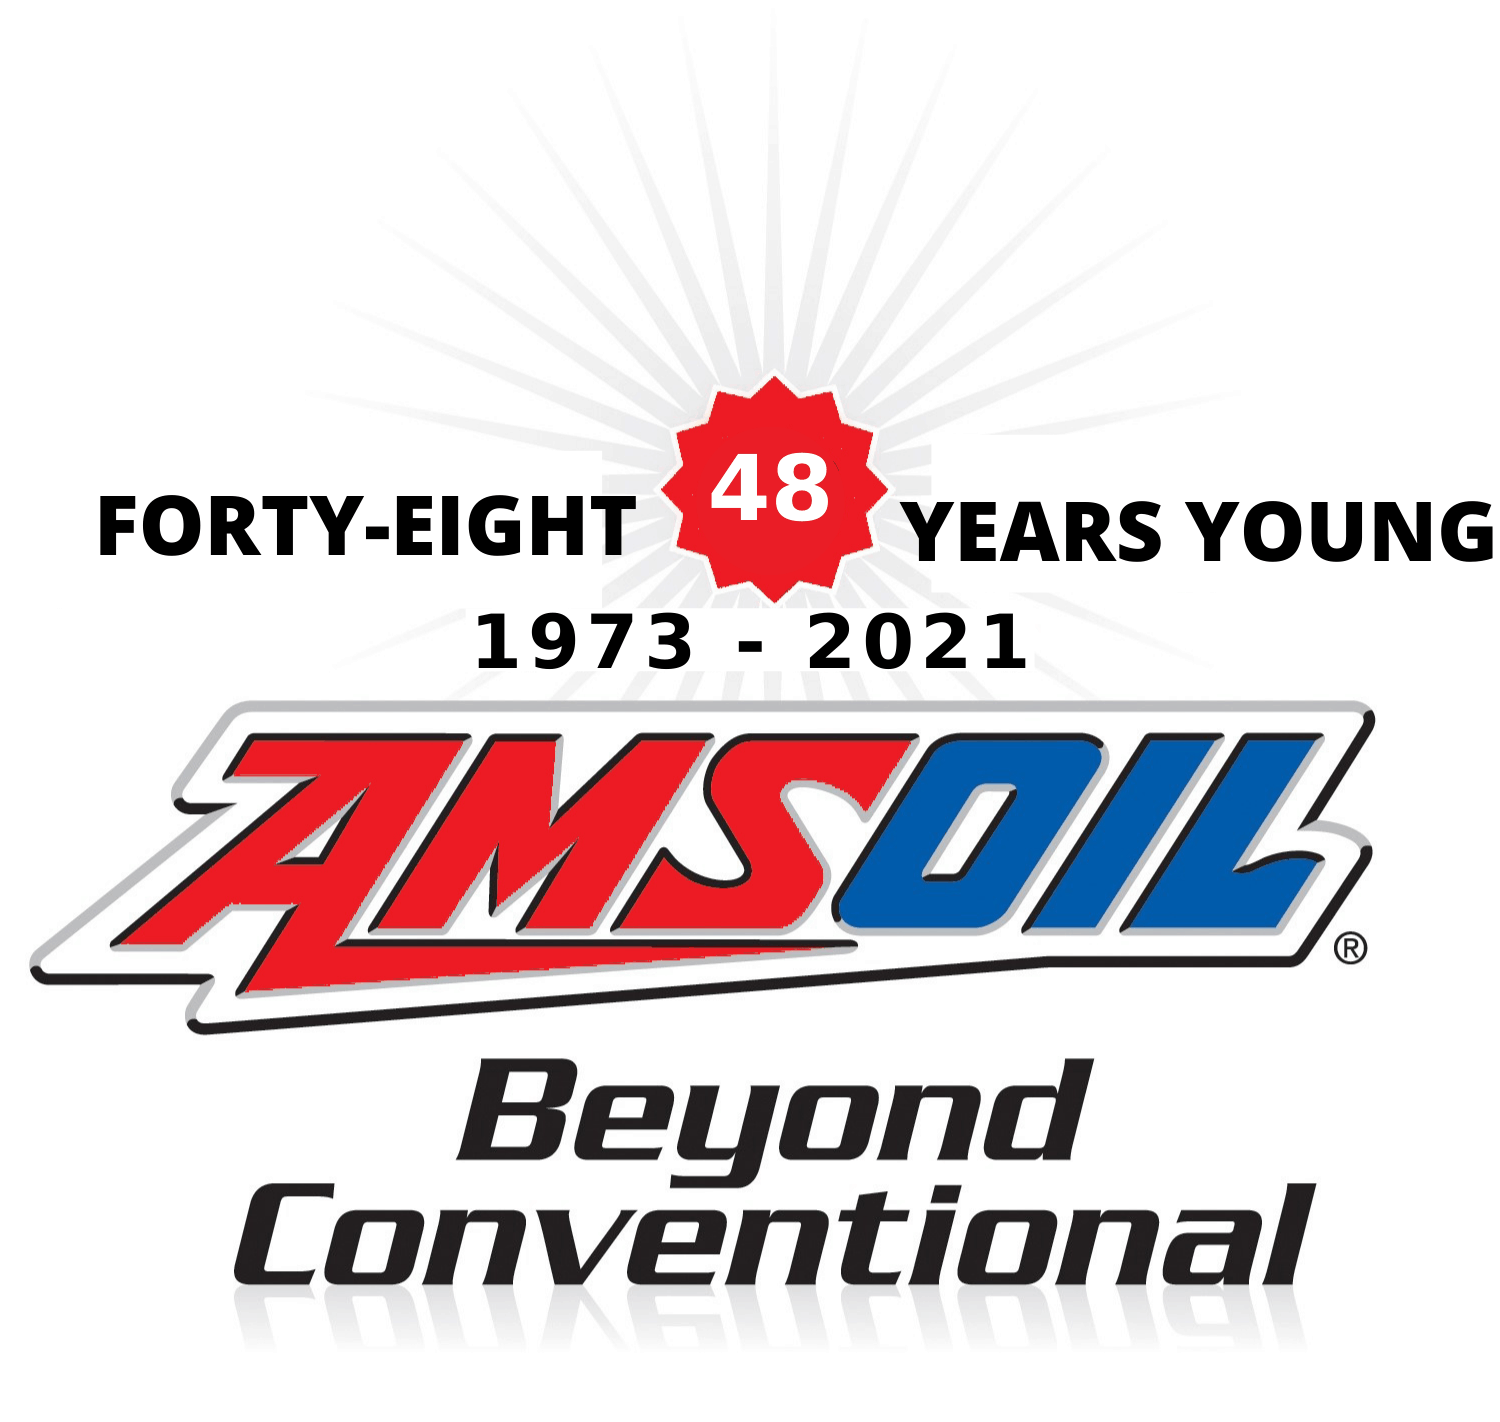 1973 - 2021